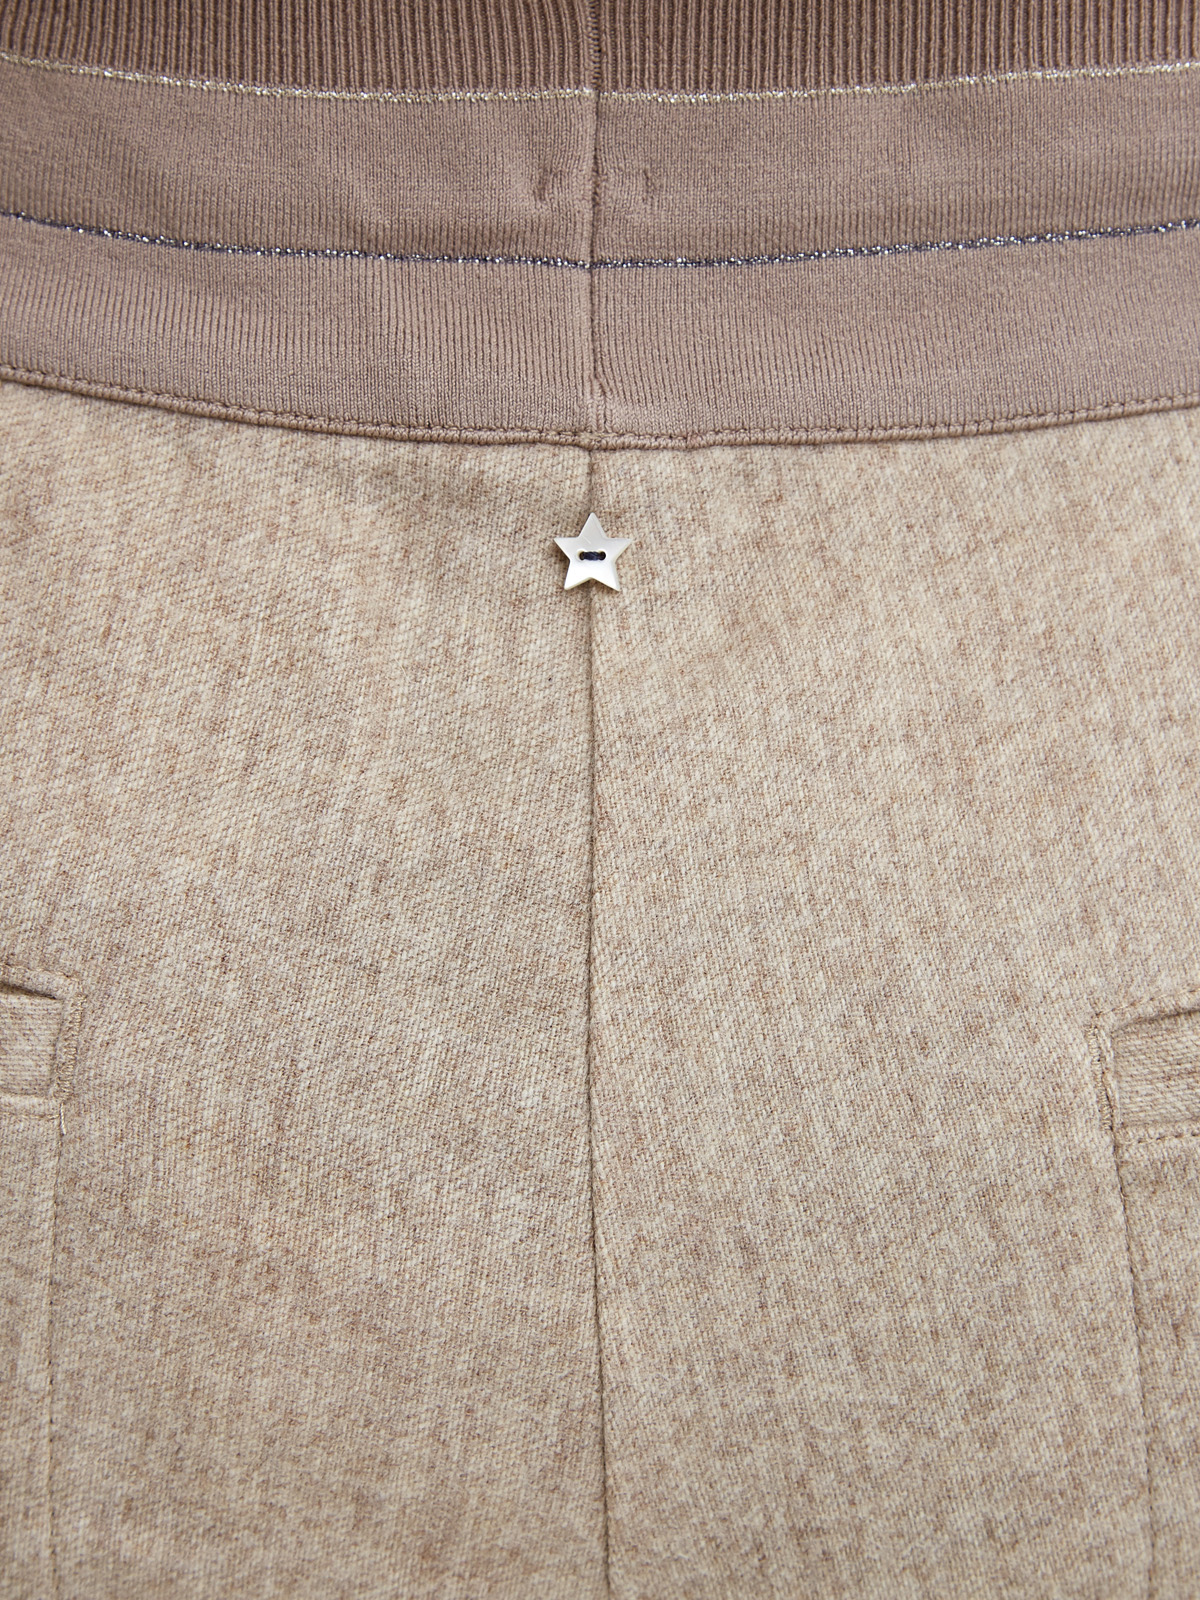 Шерстяные брюки с мерцающей нитью ламе LORENA ANTONIAZZI, цвет бежевый, размер 44;46;48;50;52;42 - фото 5